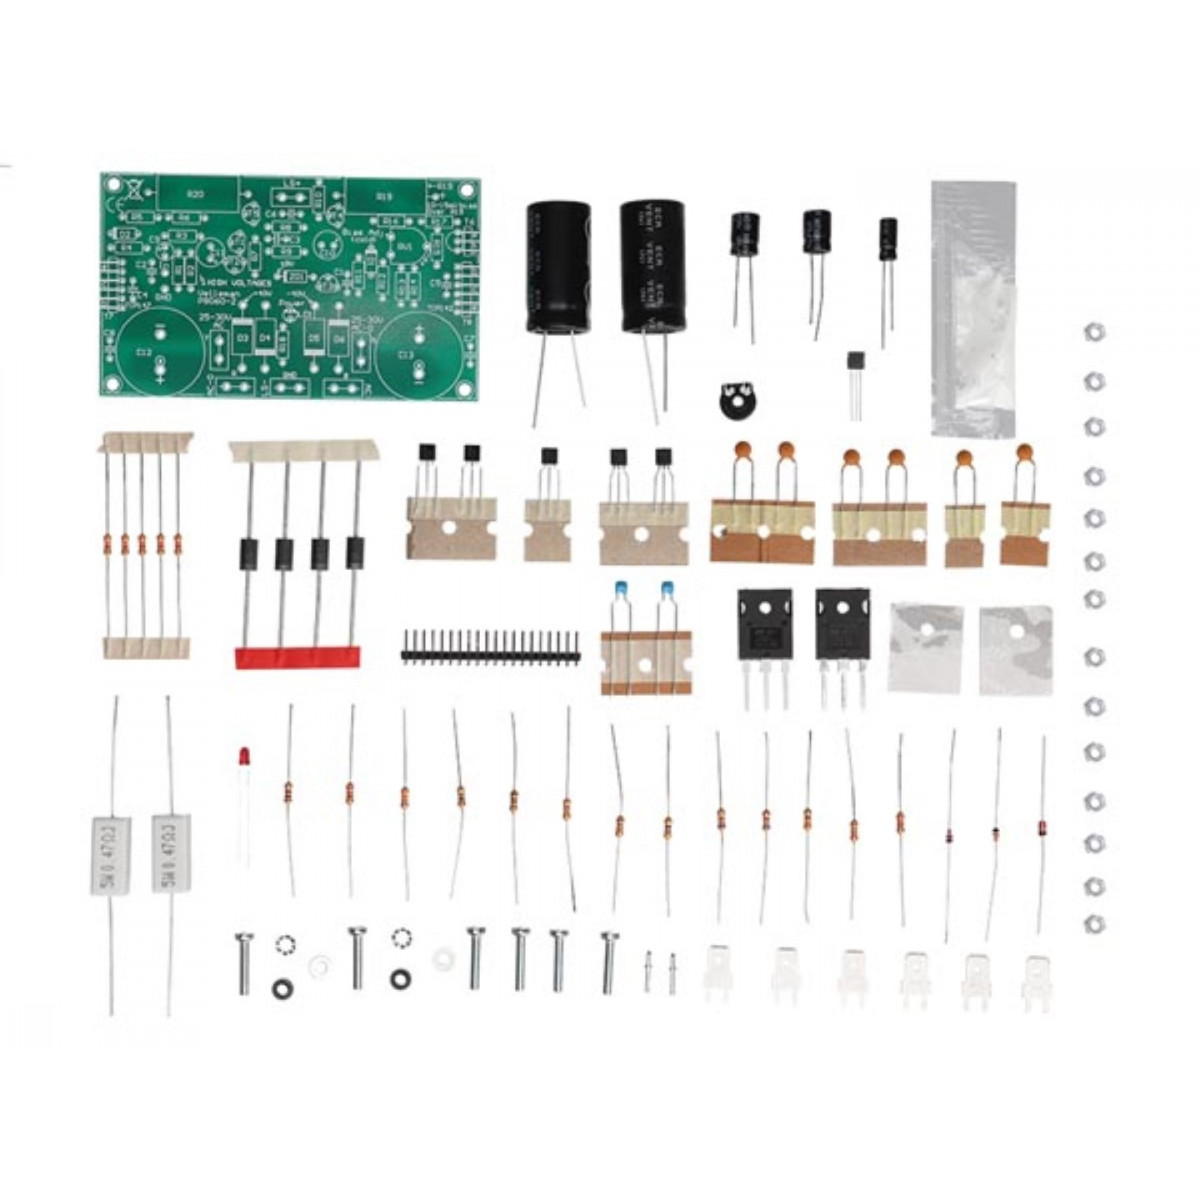 Kit Electronique TSM 38 adaptateur vu metre stereo pour ampli jusqu'a 200 w  P7H3